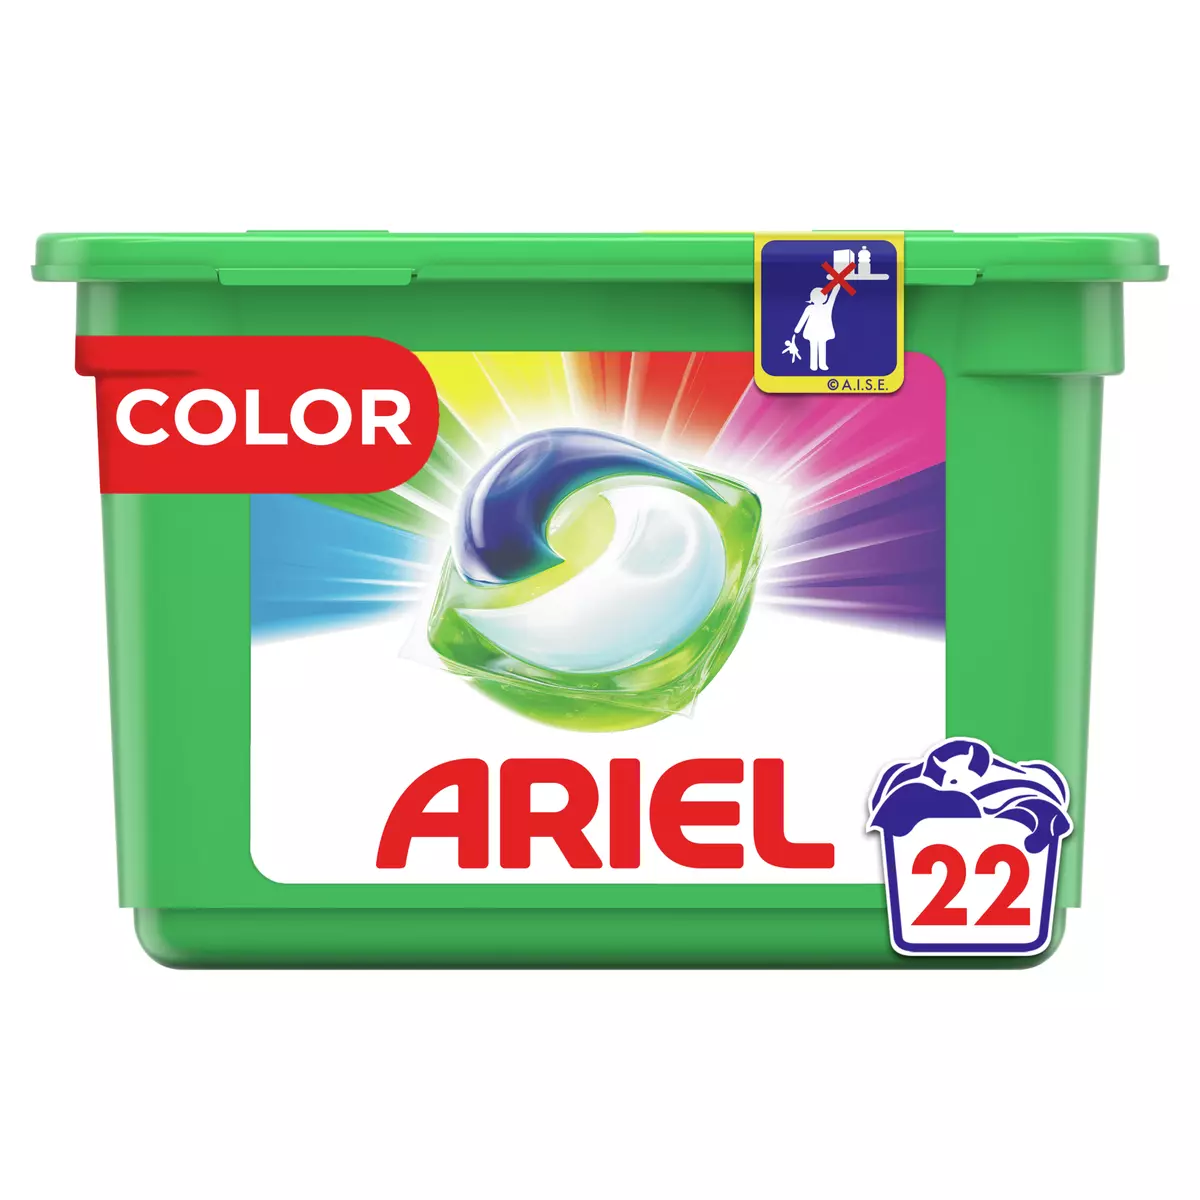 ARIEL Pods capsules de lessive tout en 1 couleurs 22 capsules